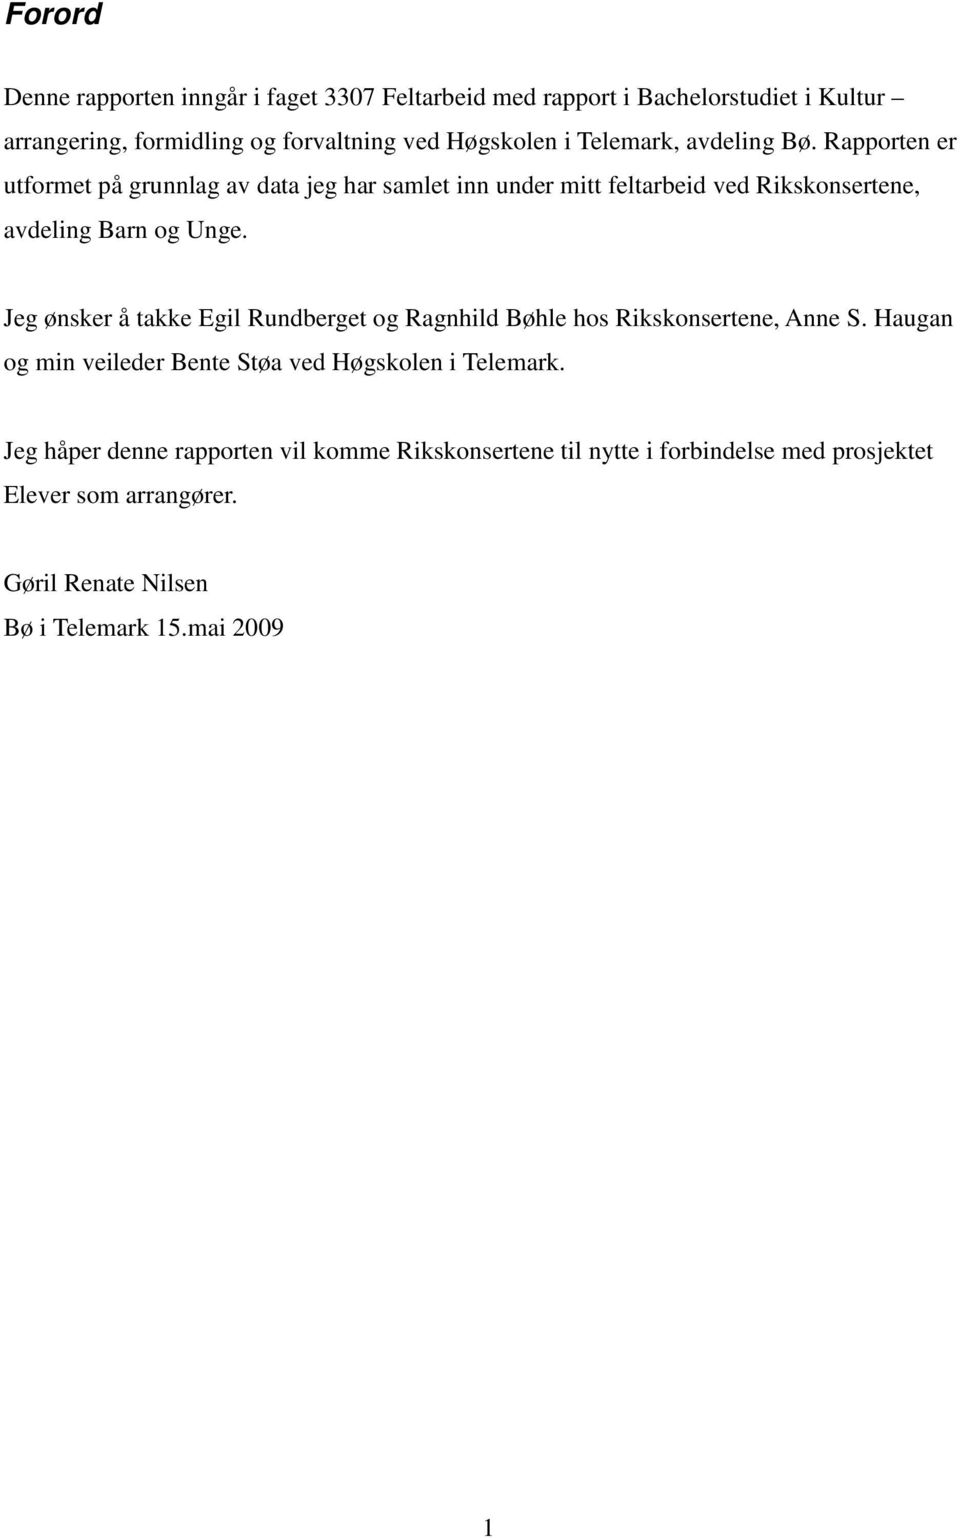 Jeg ønsker å takke Egil Rundberget og Ragnhild Bøhle hos Rikskonsertene, Anne S. Haugan og min veileder Bente Støa ved Høgskolen i Telemark.